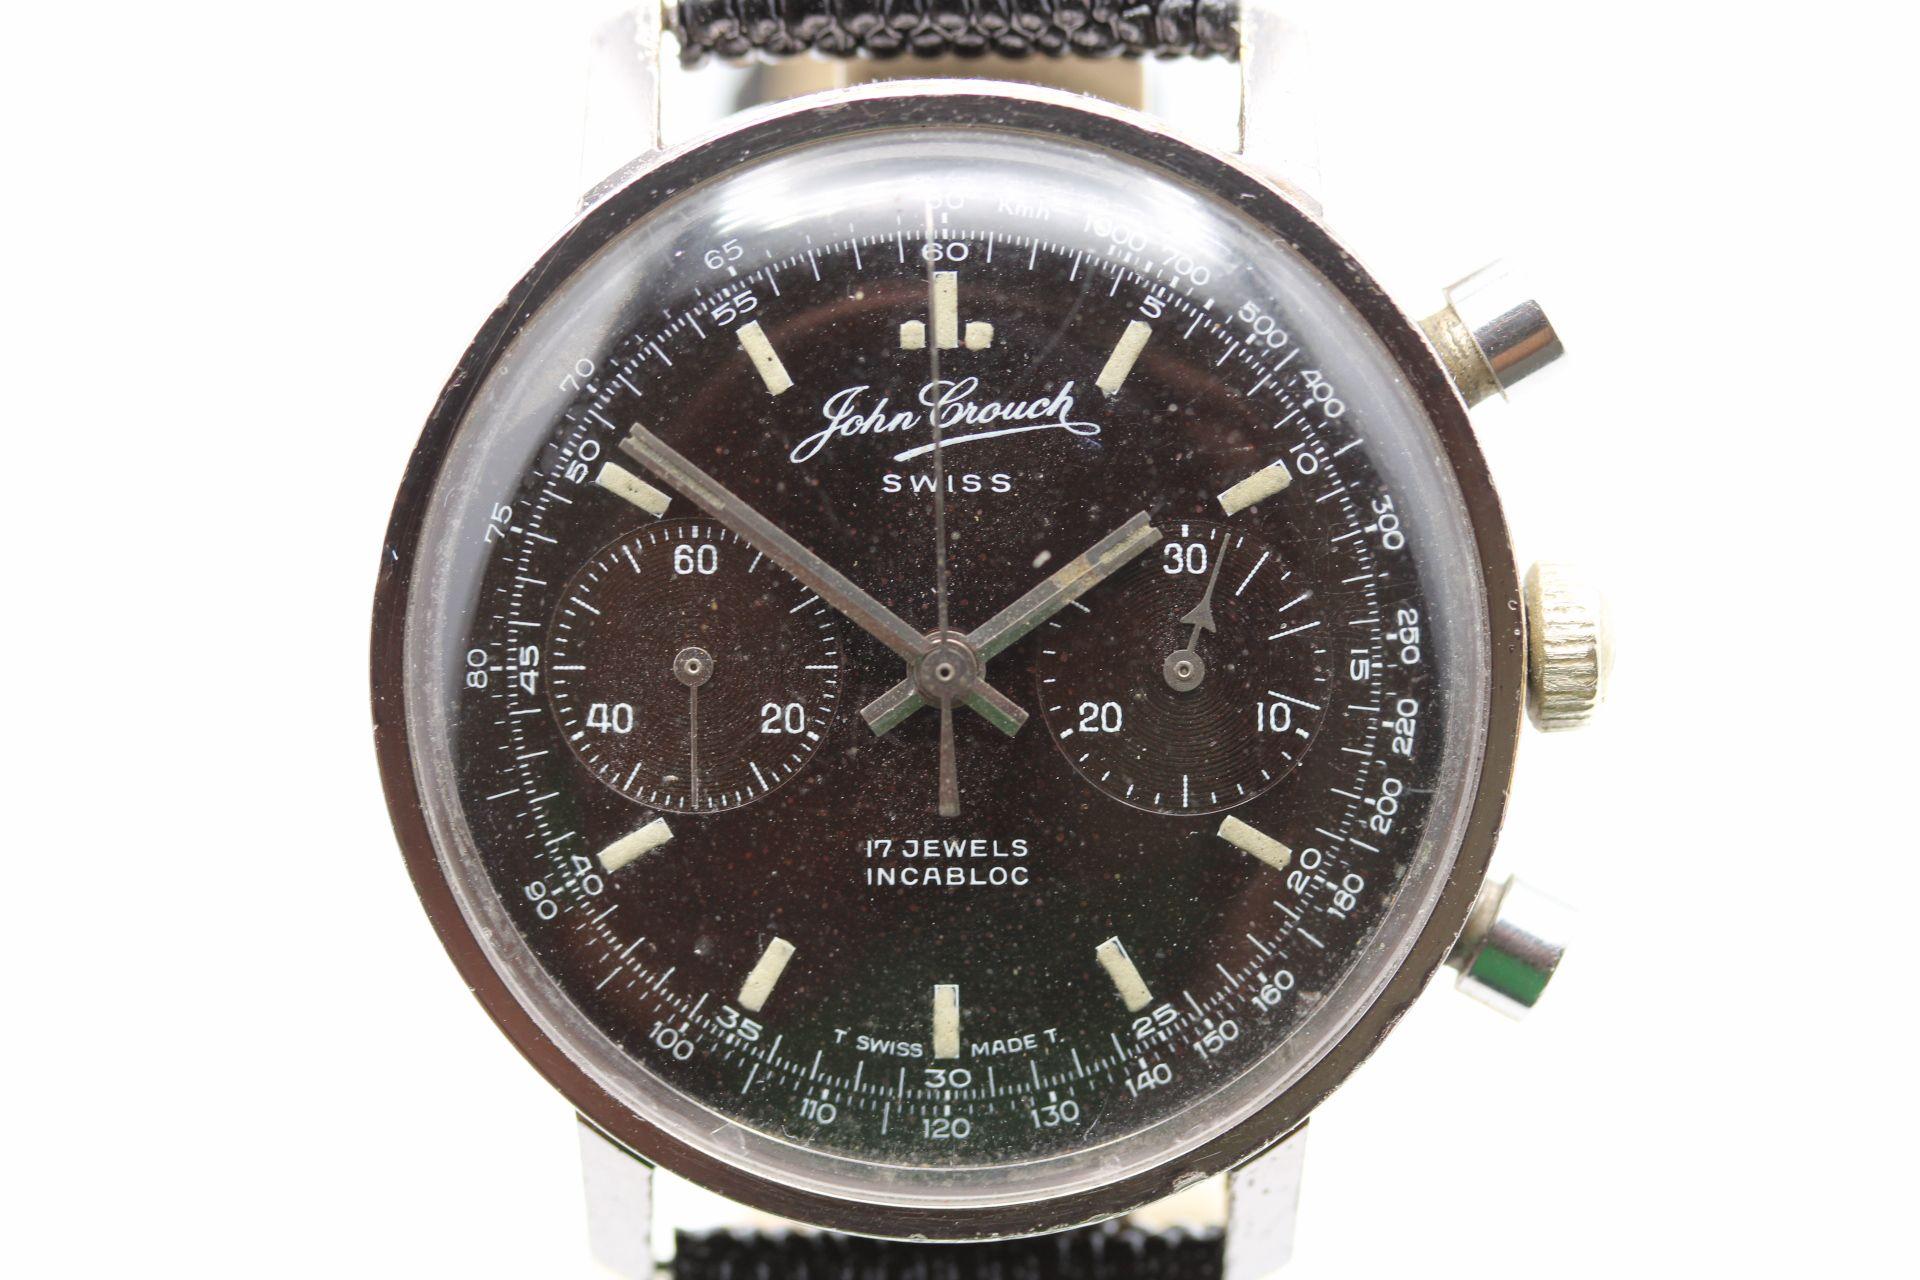 Es ist nicht viel bekannt über John Crouch, eine Schweizer Boutique-Uhrenmanufaktur, die vielleicht eine der wenigen ist, die beworben werden, aber das sollte der Uhr nicht schaden. Das Handaufzugswerk wird von einem renommierten Landeron-Uhrwerk